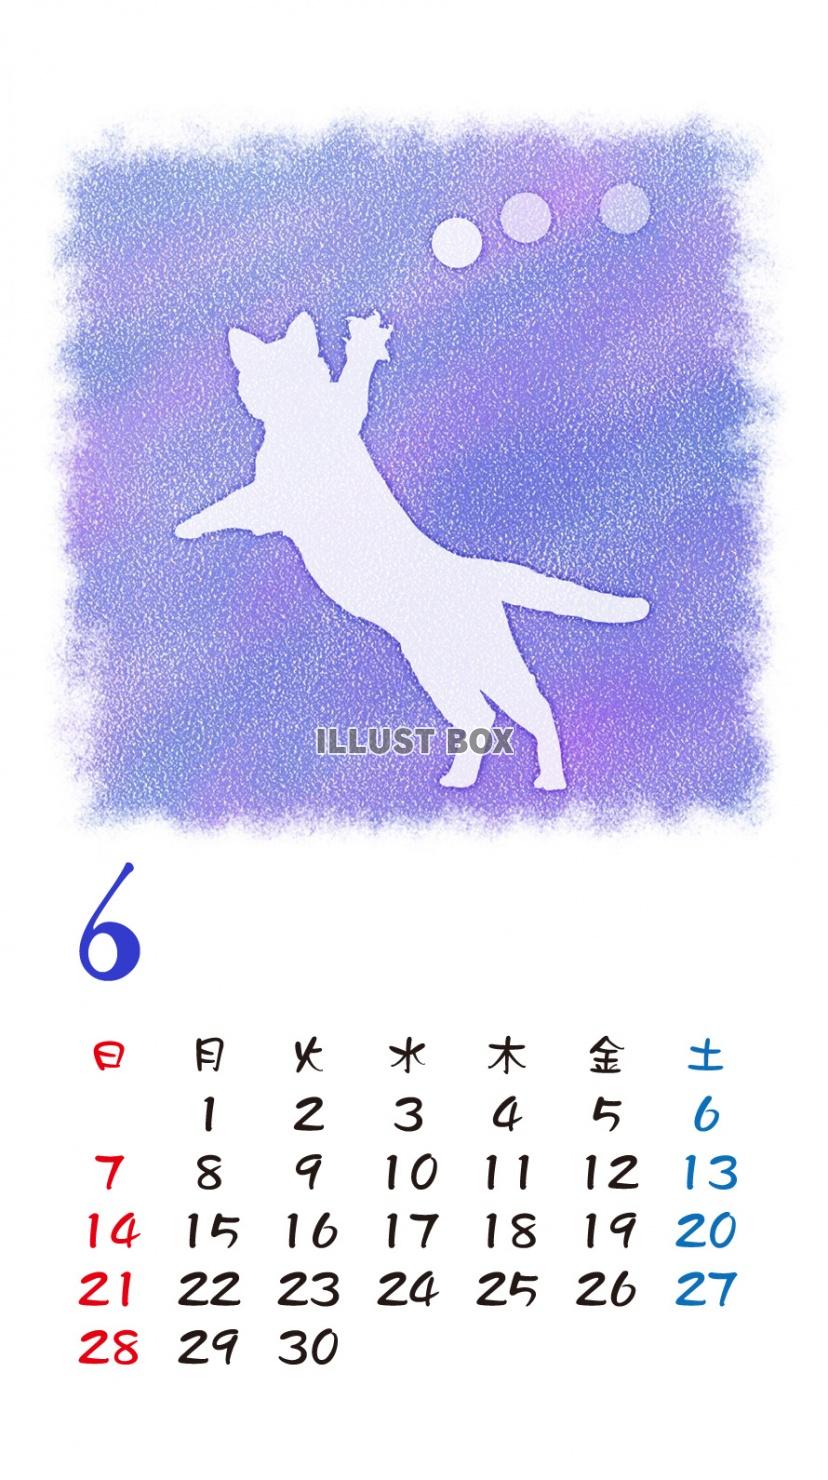 無料イラスト Iphone6用 カレンダー 猫シルエットパステル調 6月